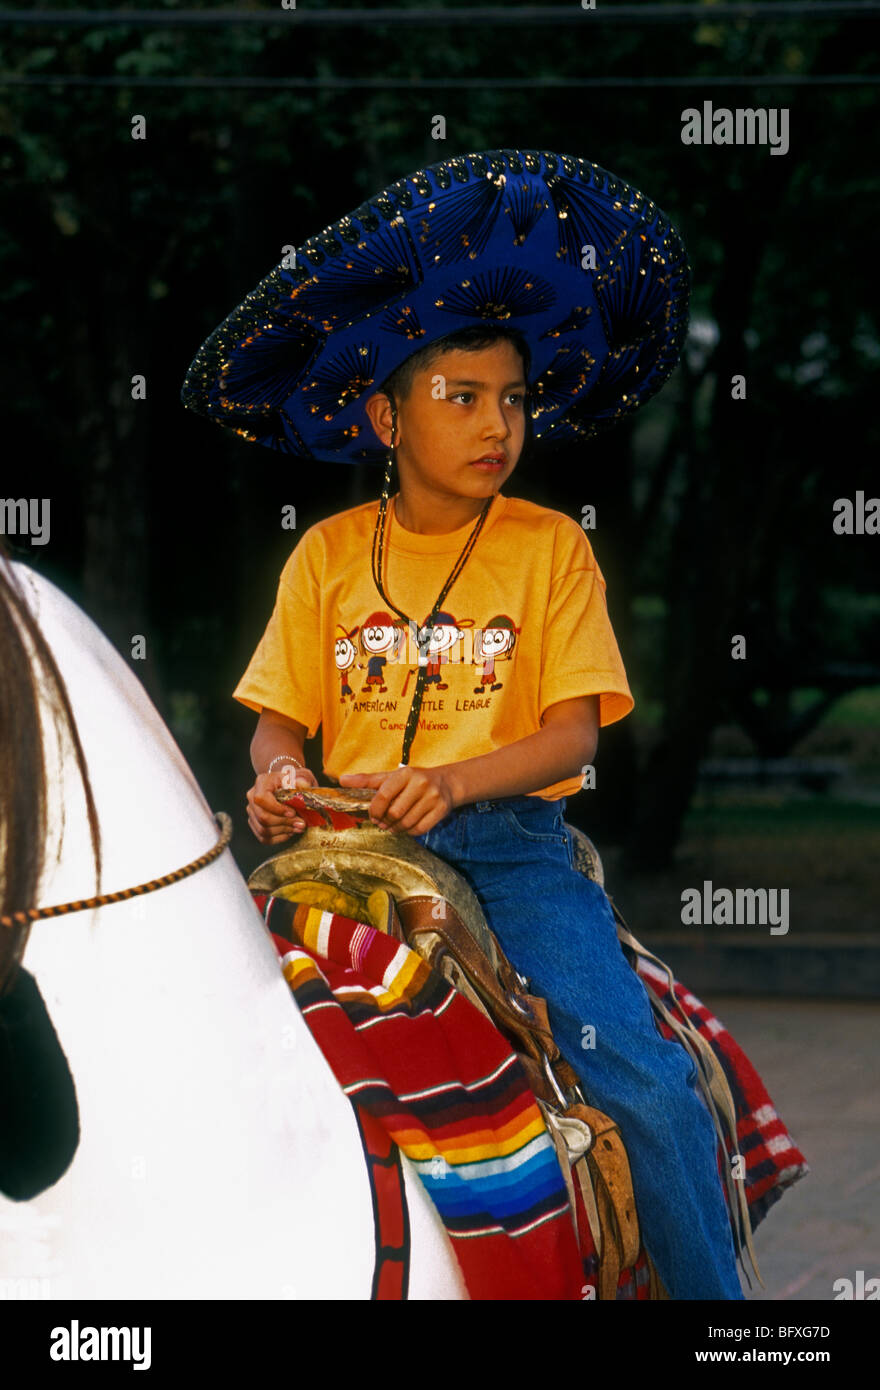 1, 1, mexikanische Junge, Junge, Junge, Junge, männliche Kind, Kind, in den Sattel auf Spielzeug Pferd sitzend, Chapultepec Park, Mexiko City, Mexiko Stockfoto